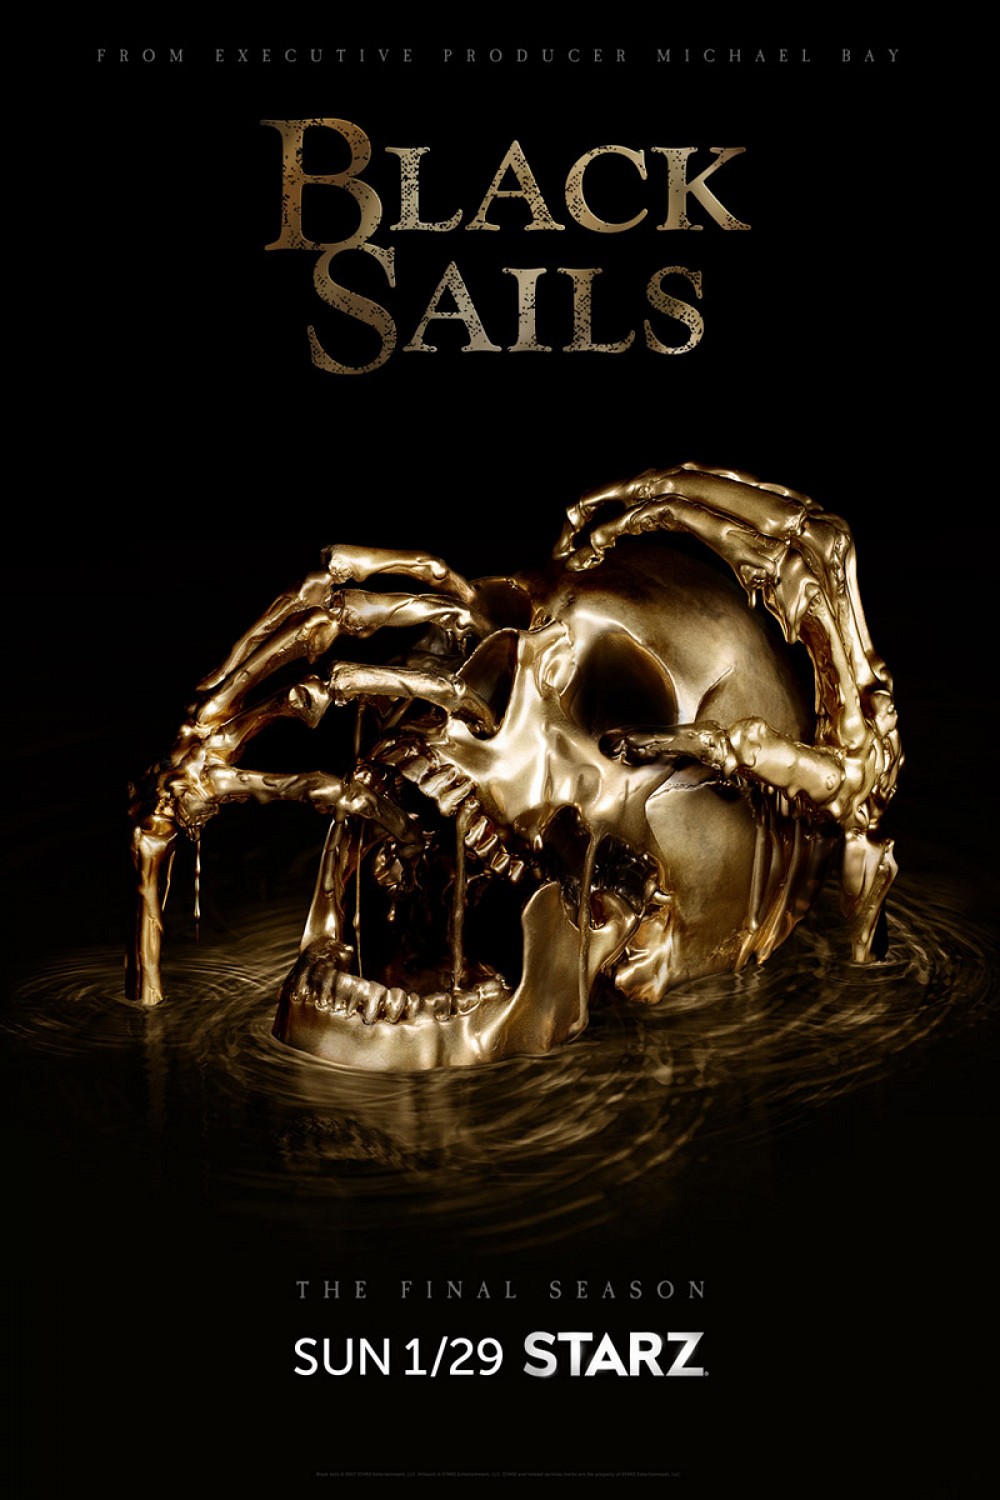 Black-Sails-Final-Season-Poster